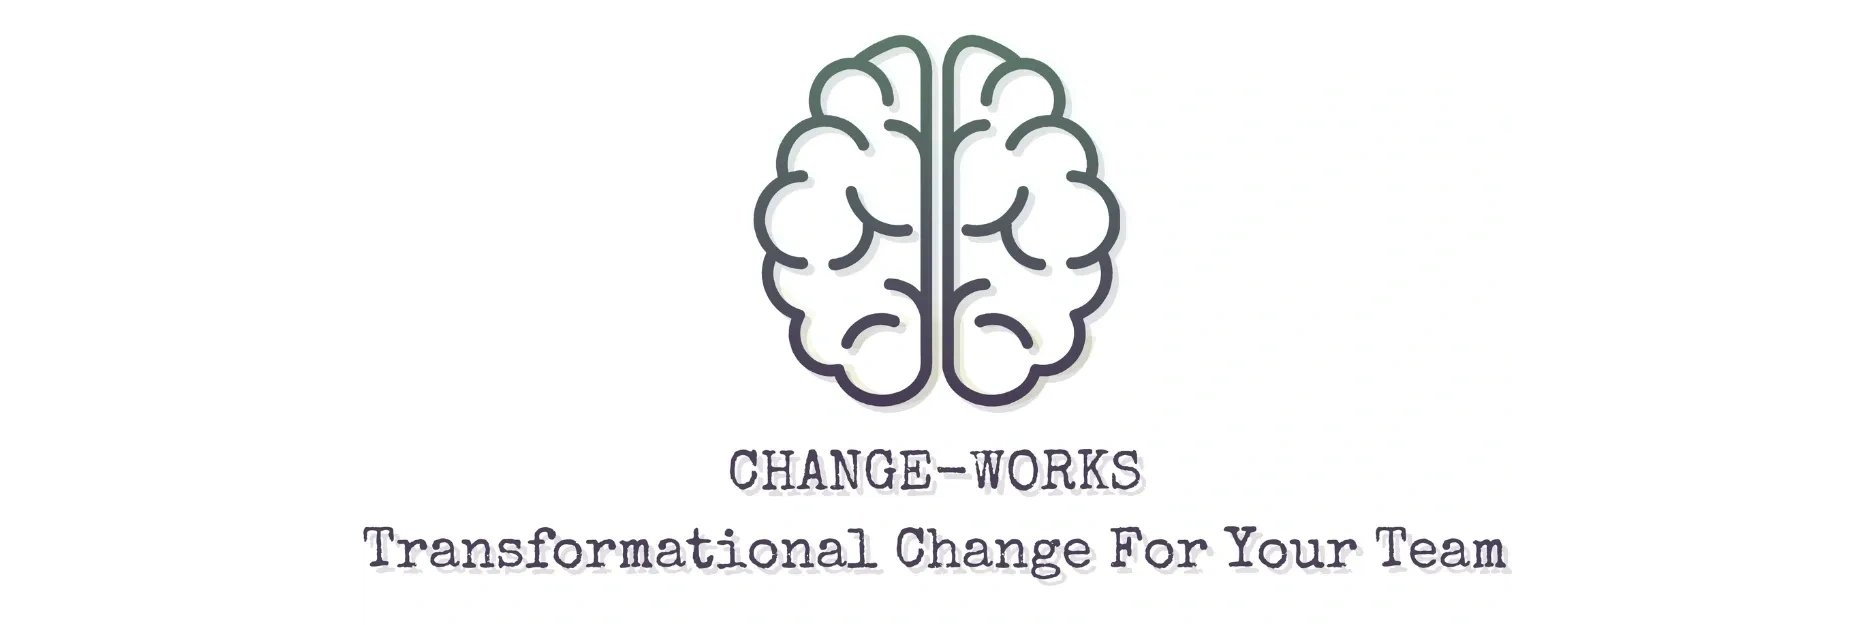 Change-Works logo header